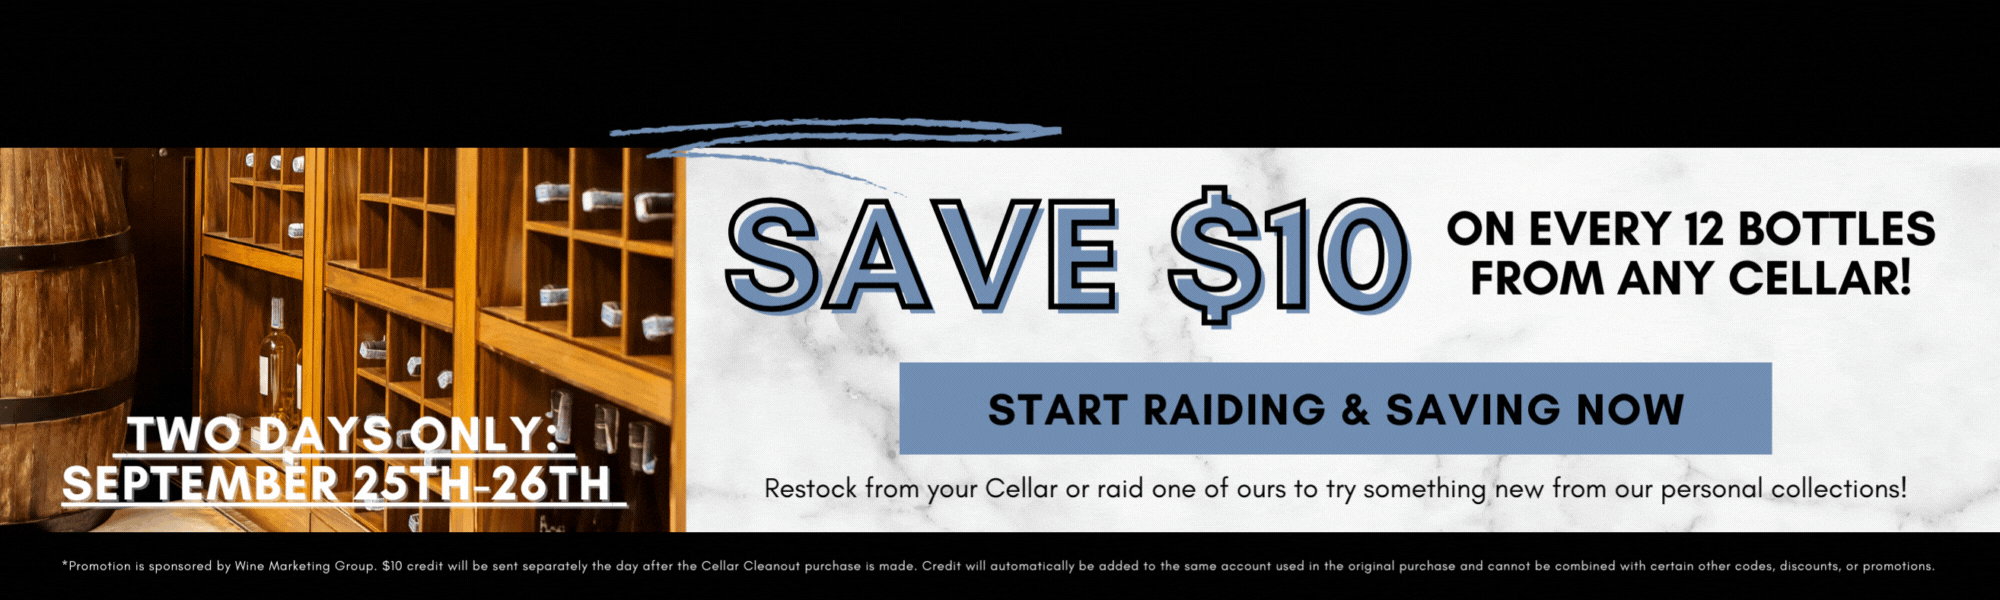 cellar savings